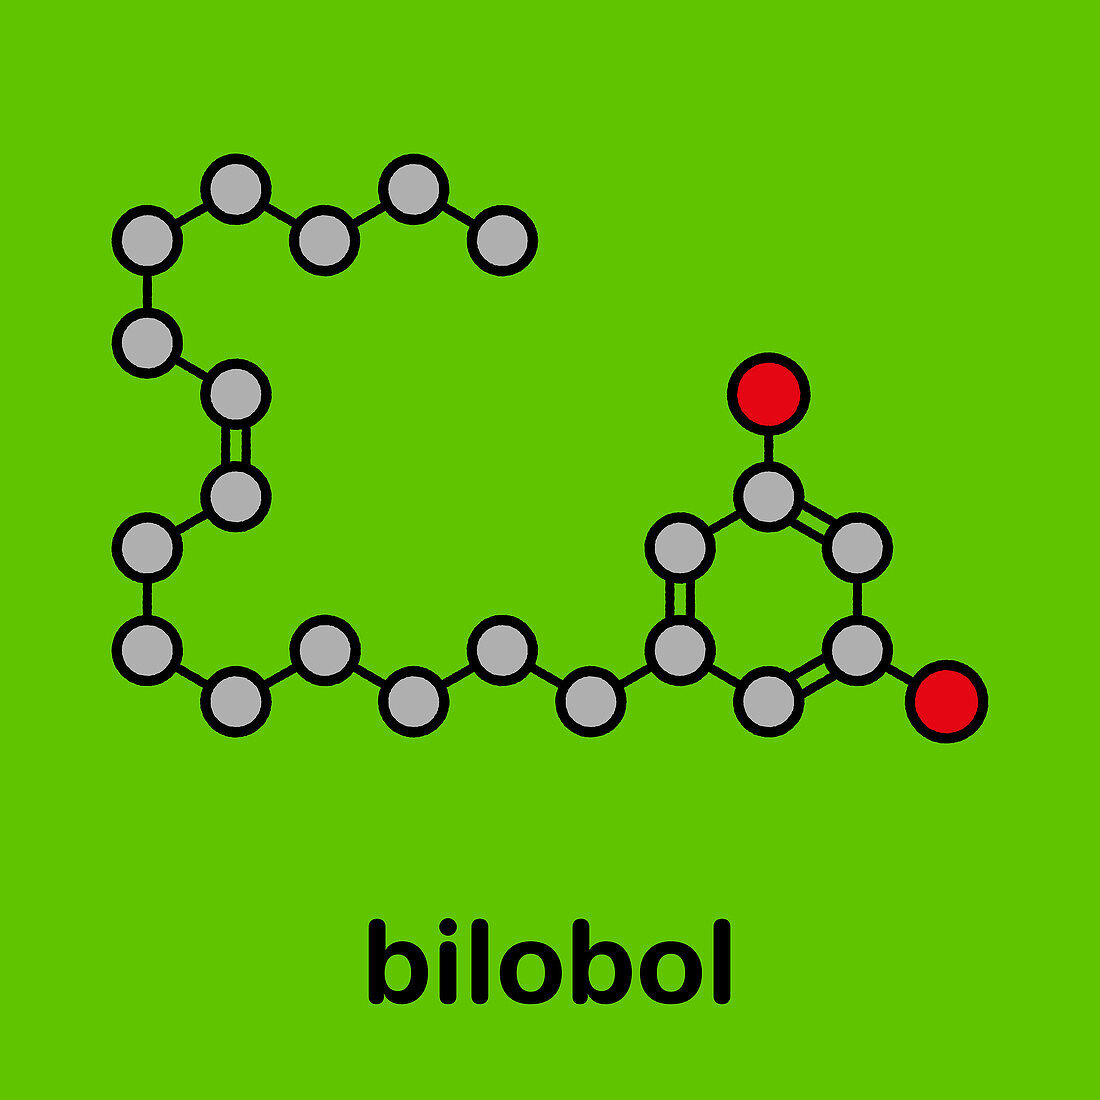 Bilobol Ginkgo biloba molecule, illustration